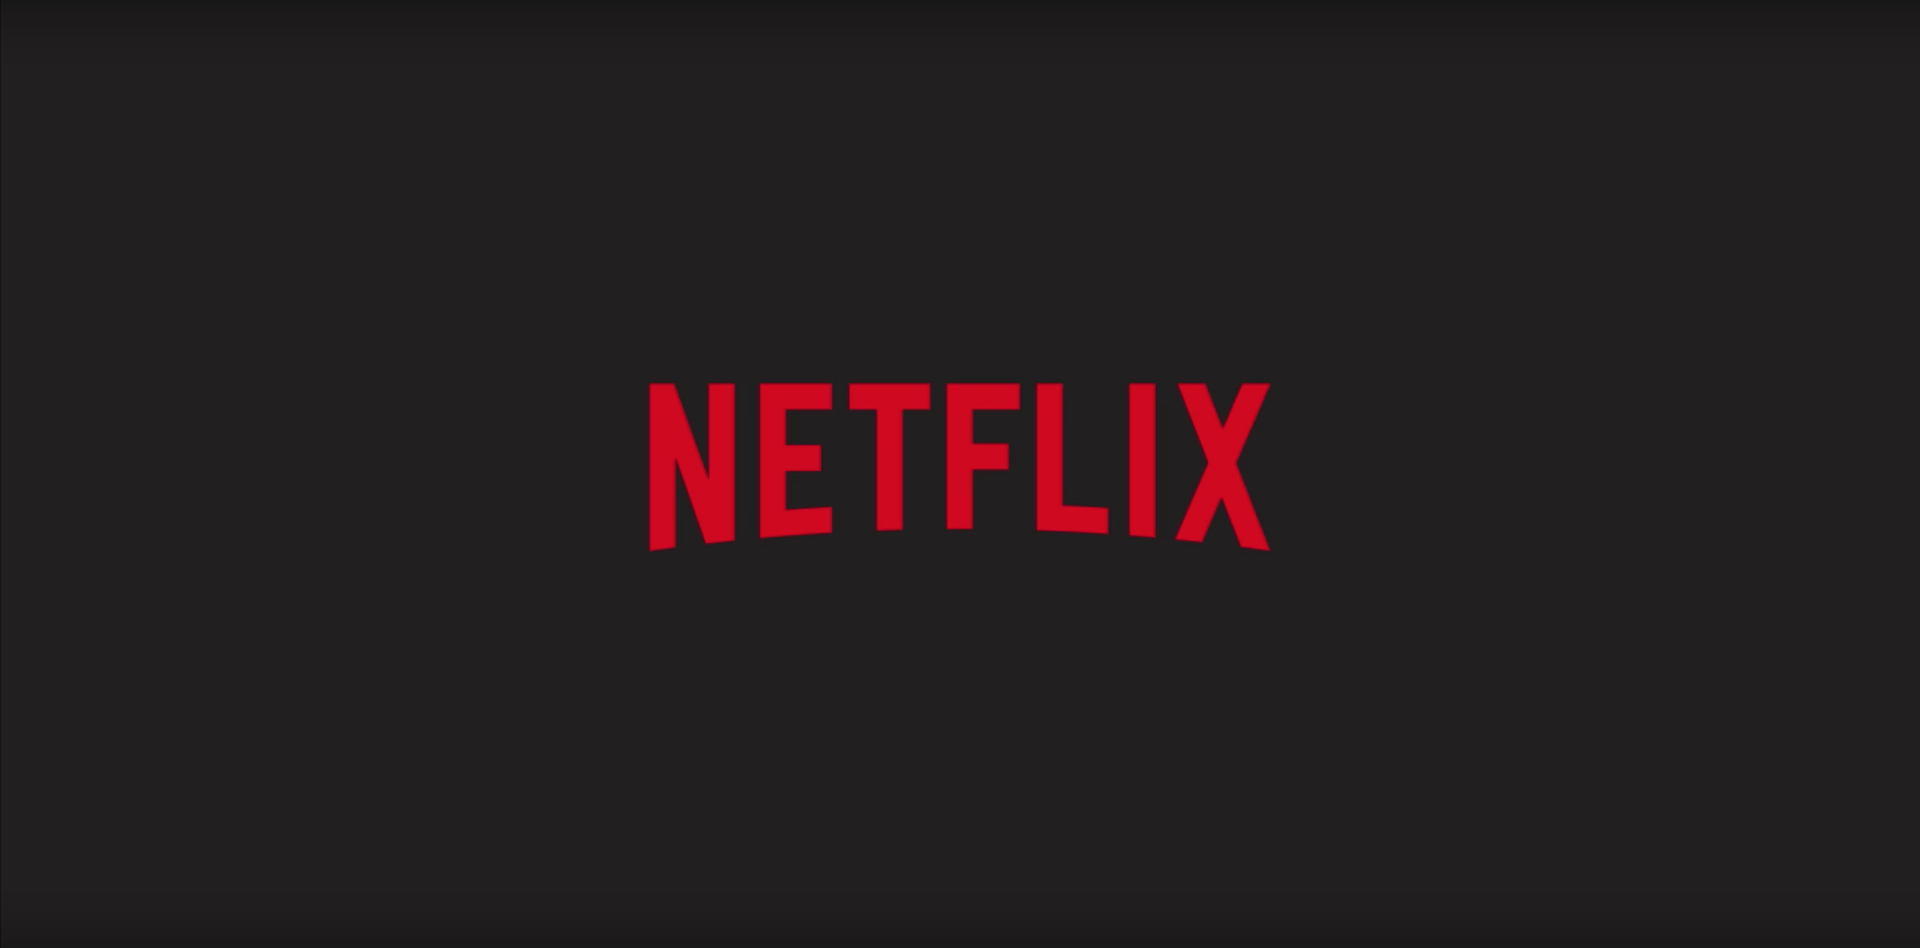 Netflix vence disputa com seis estúdios e adquire o direito de adaptação de história real